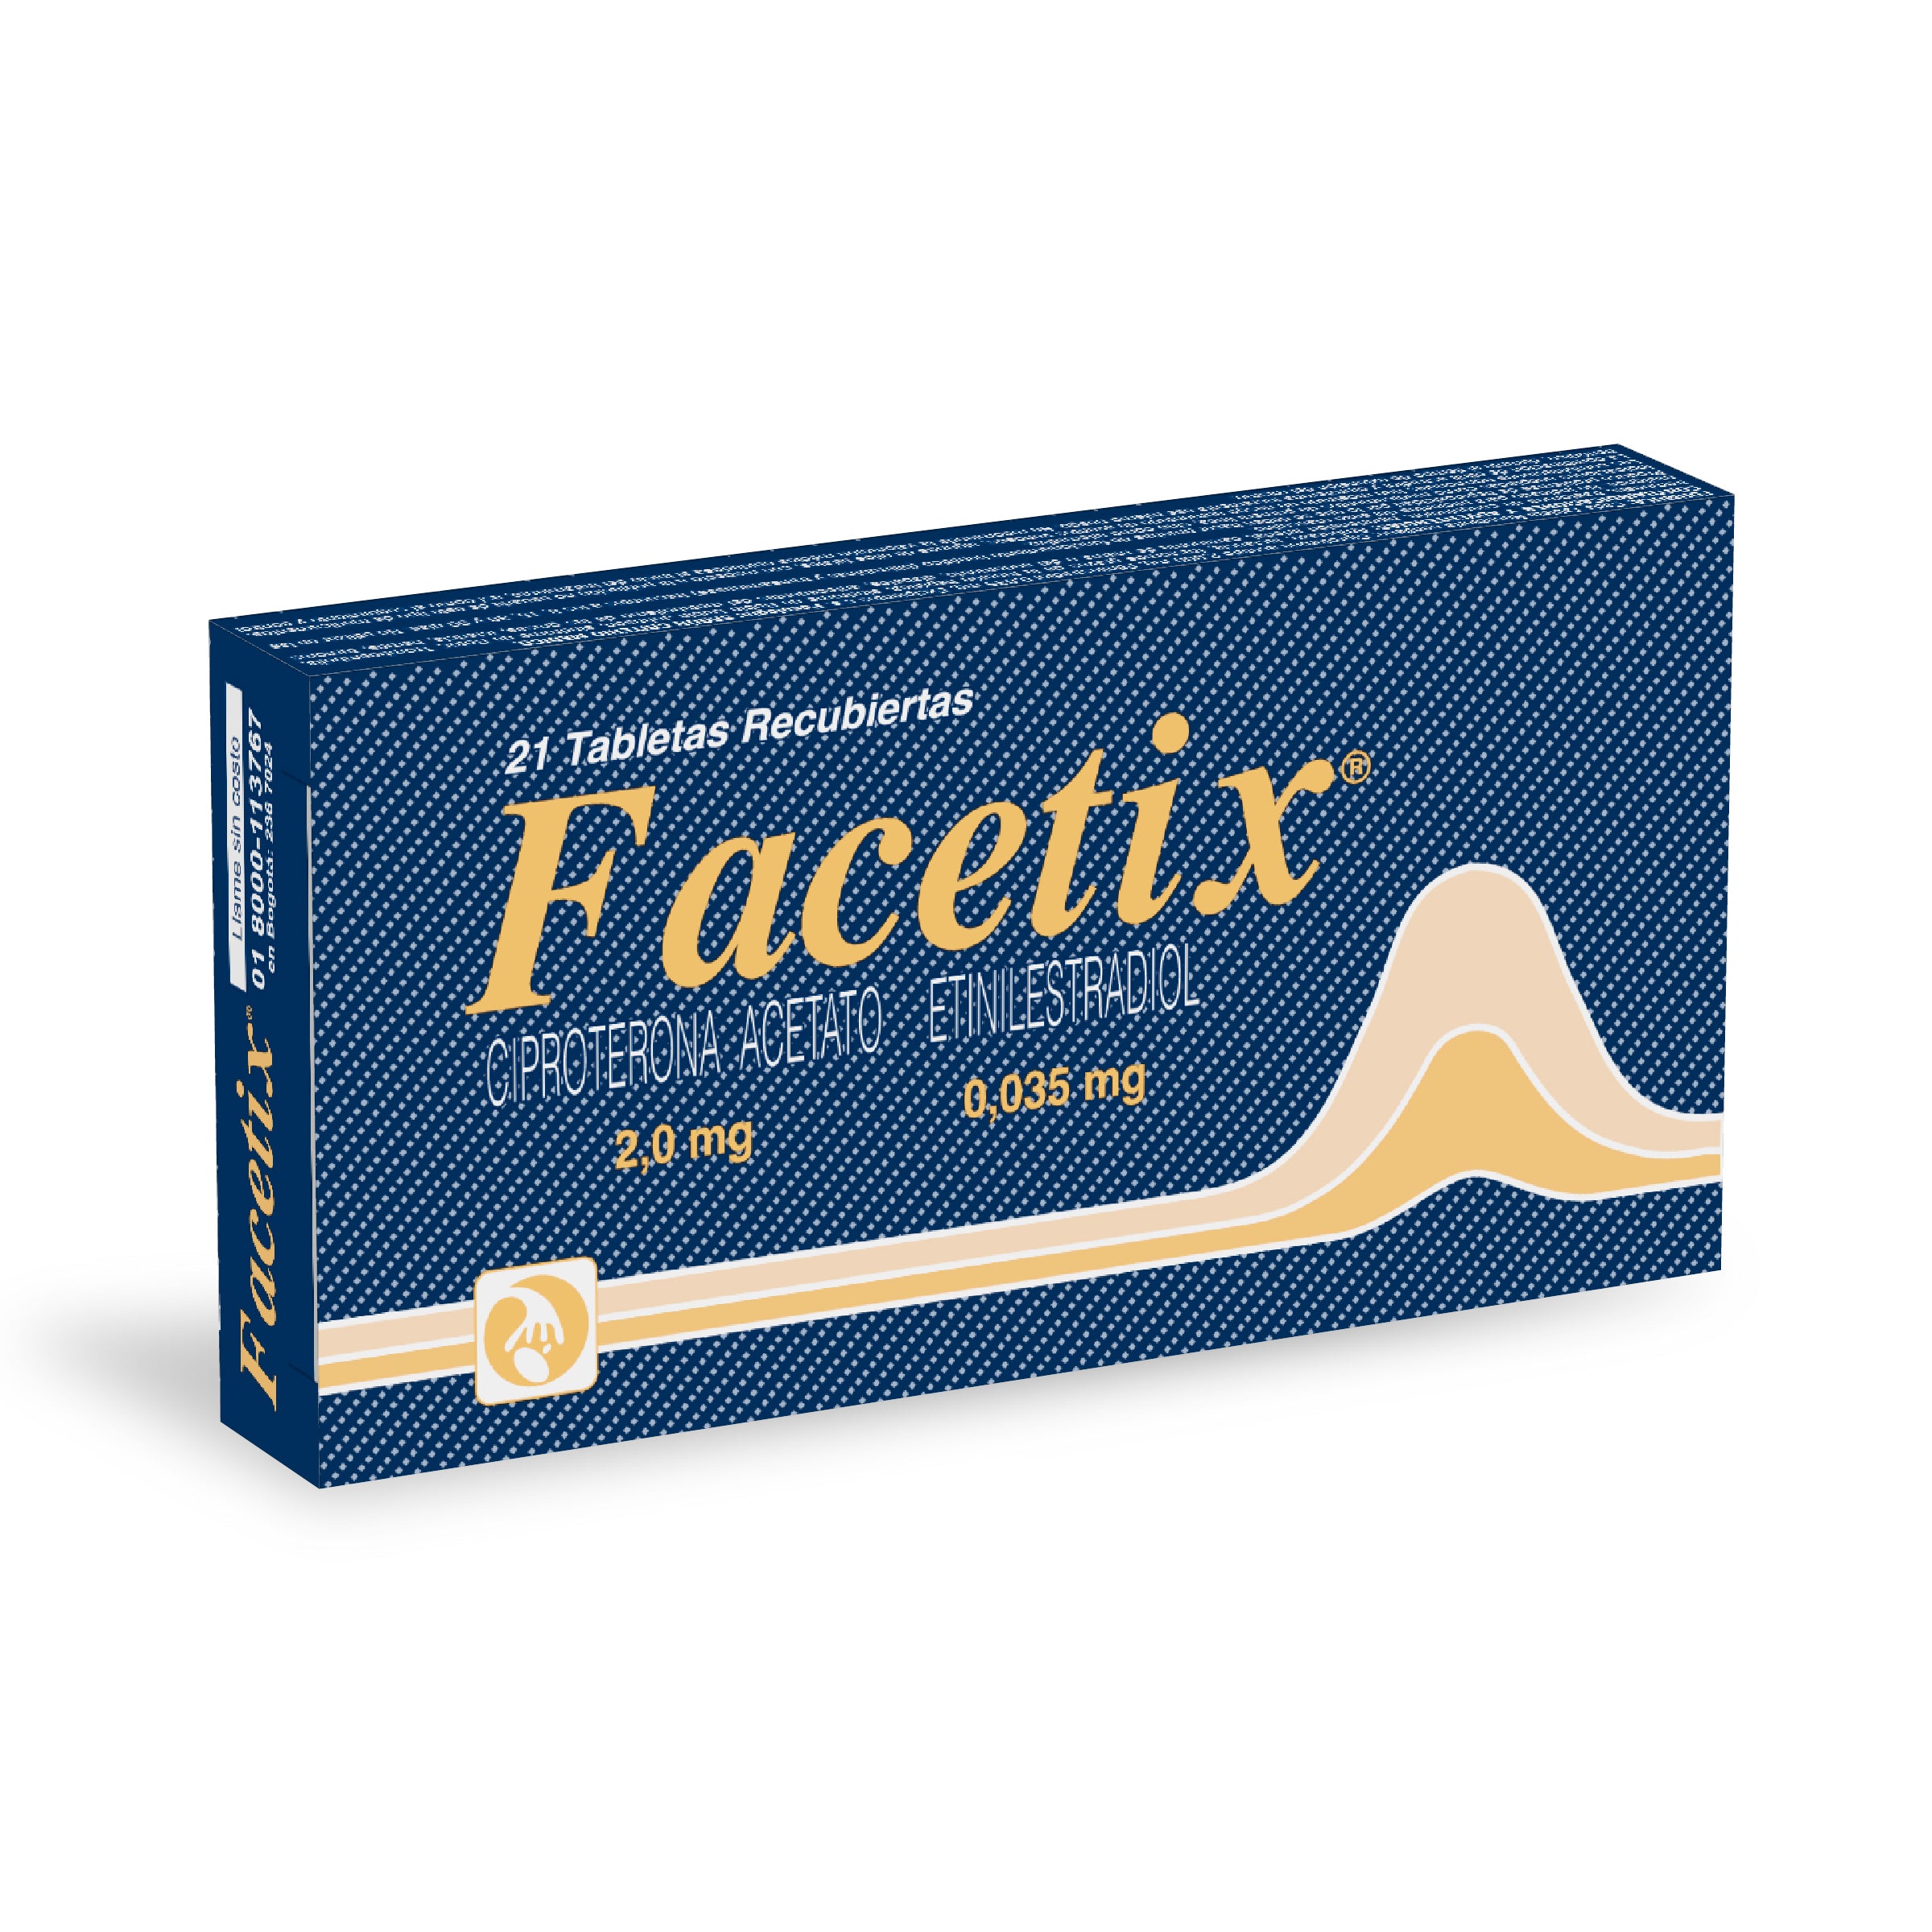 FACETIX 21 GRAGEAS